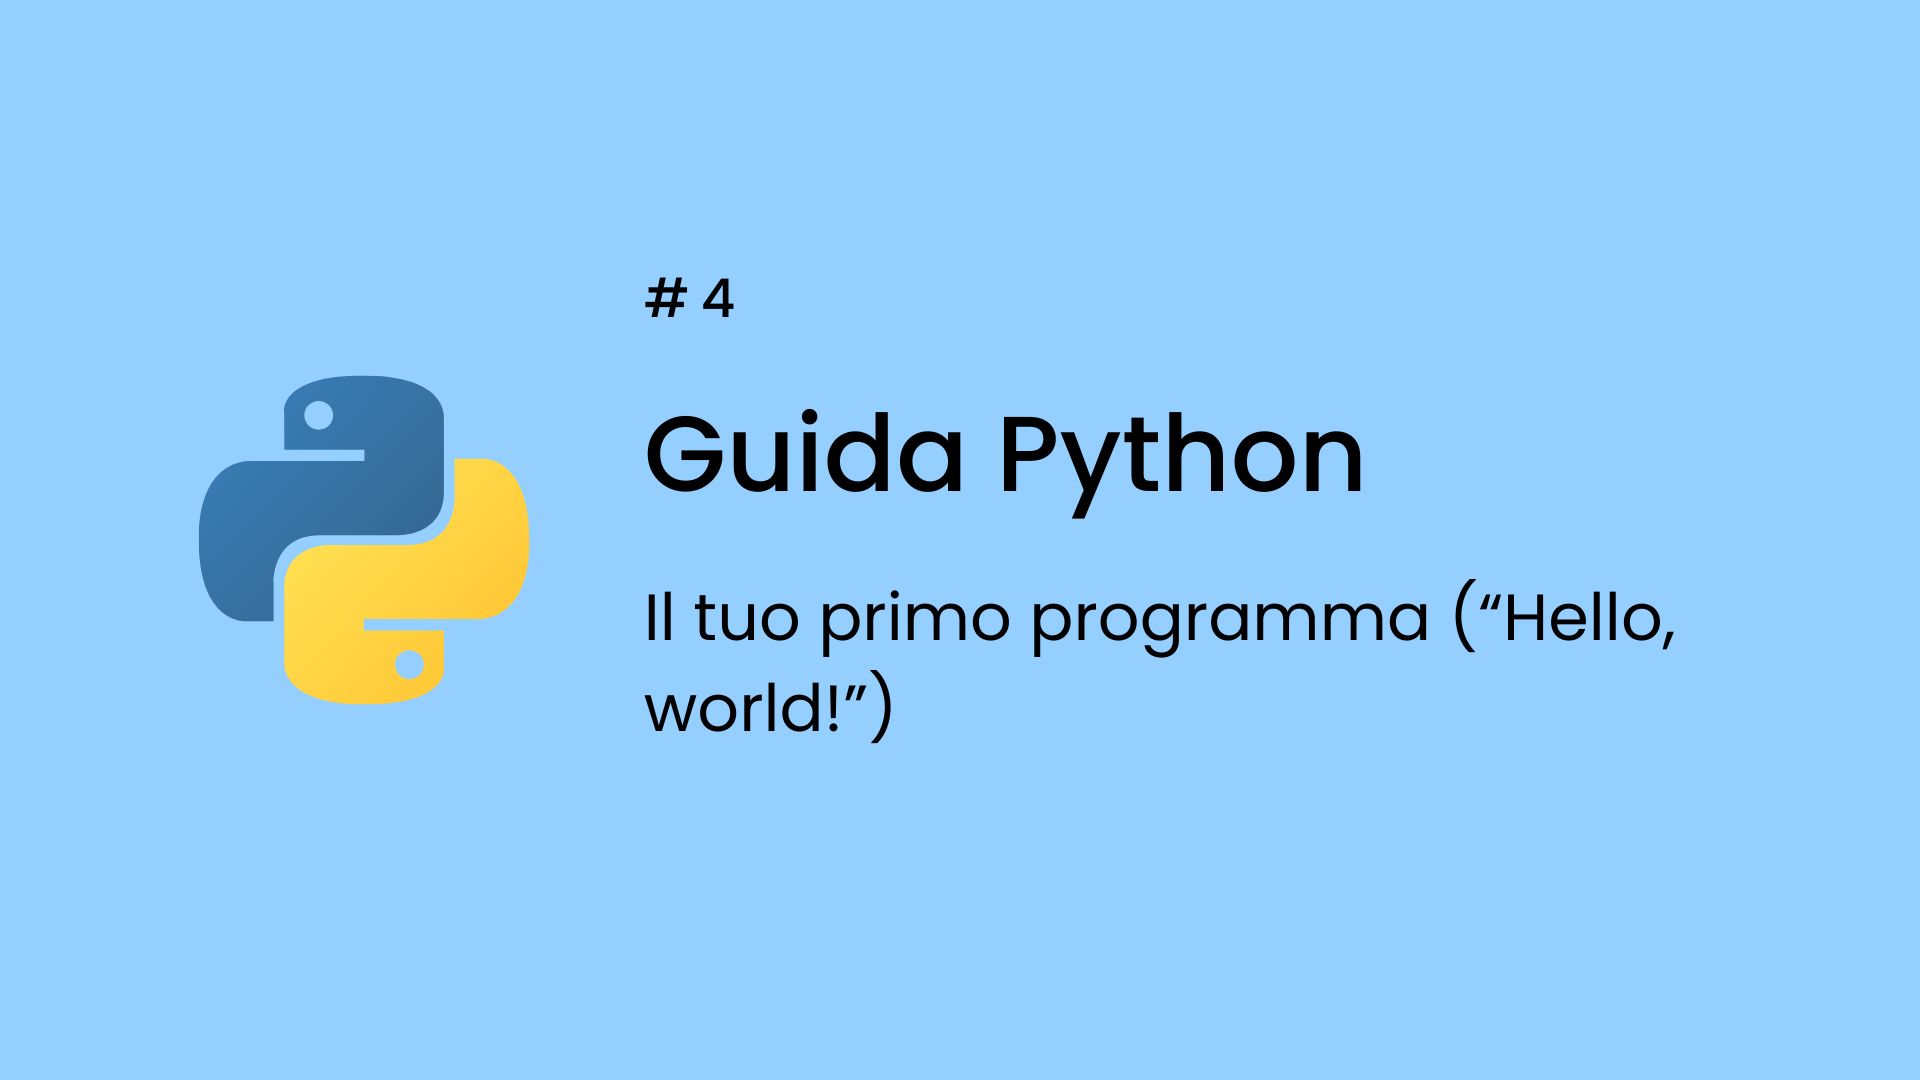 Realizzare il tuo primo programma con Python: stampare "Hello, world!"